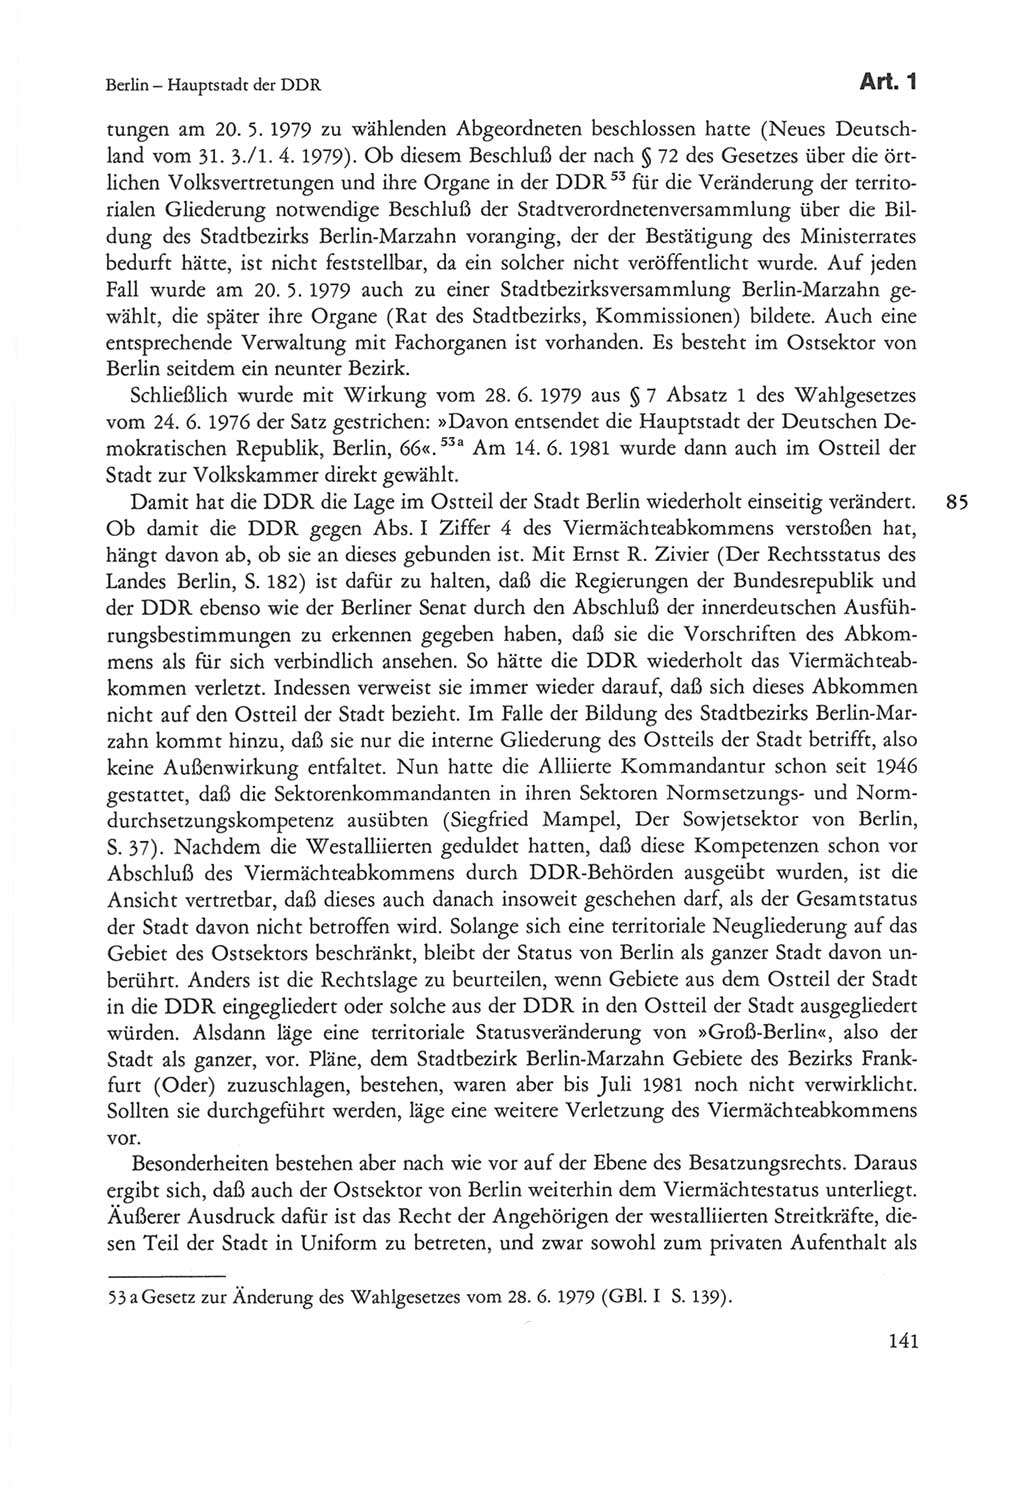 Die sozialistische Verfassung der Deutschen Demokratischen Republik (DDR), Kommentar 1982, Seite 141 (Soz. Verf. DDR Komm. 1982, S. 141)